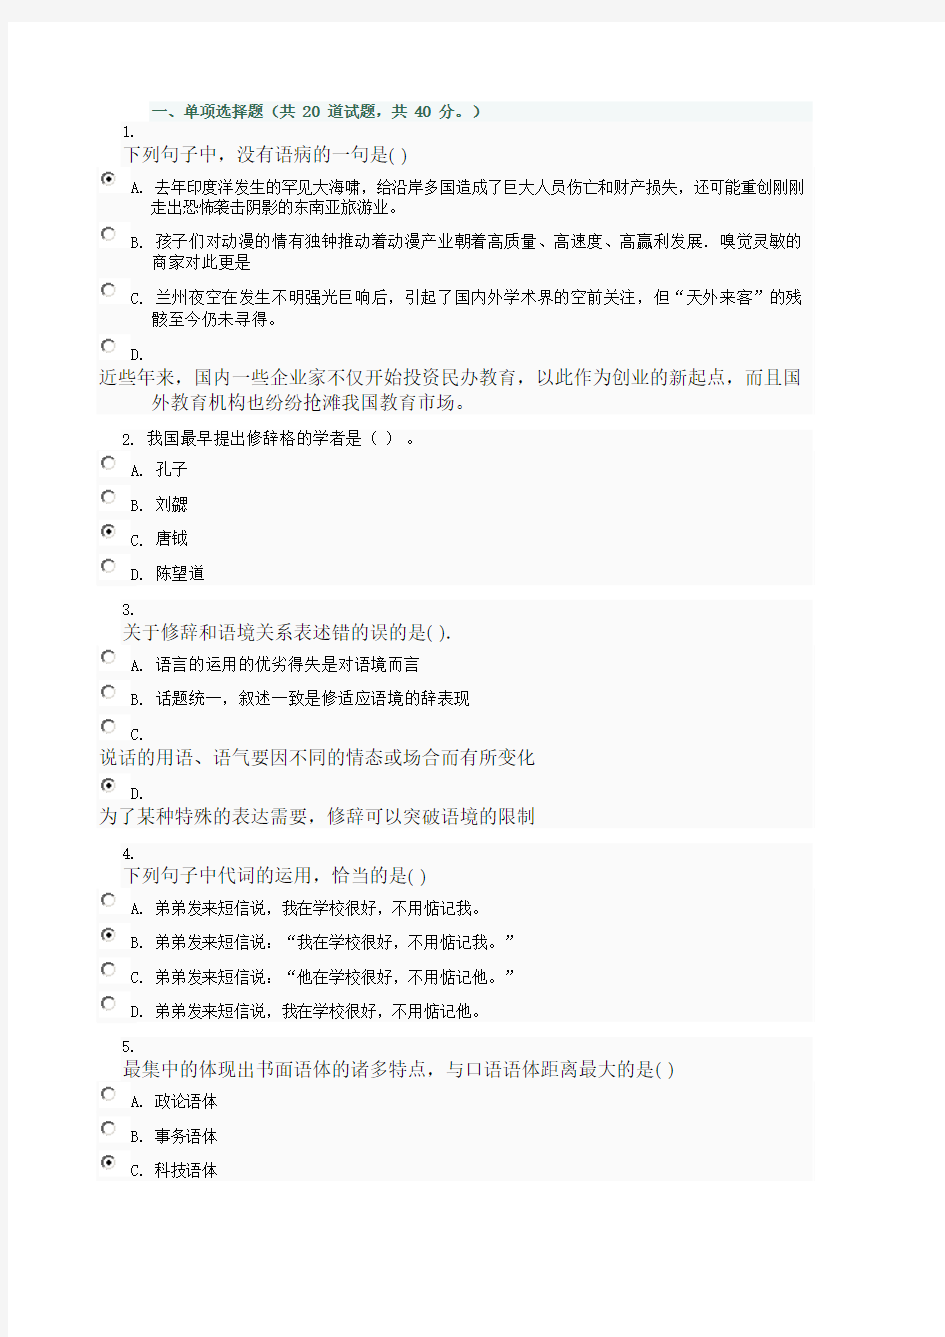 山西电大17秋汉语修辞学作业1_0003标准答案